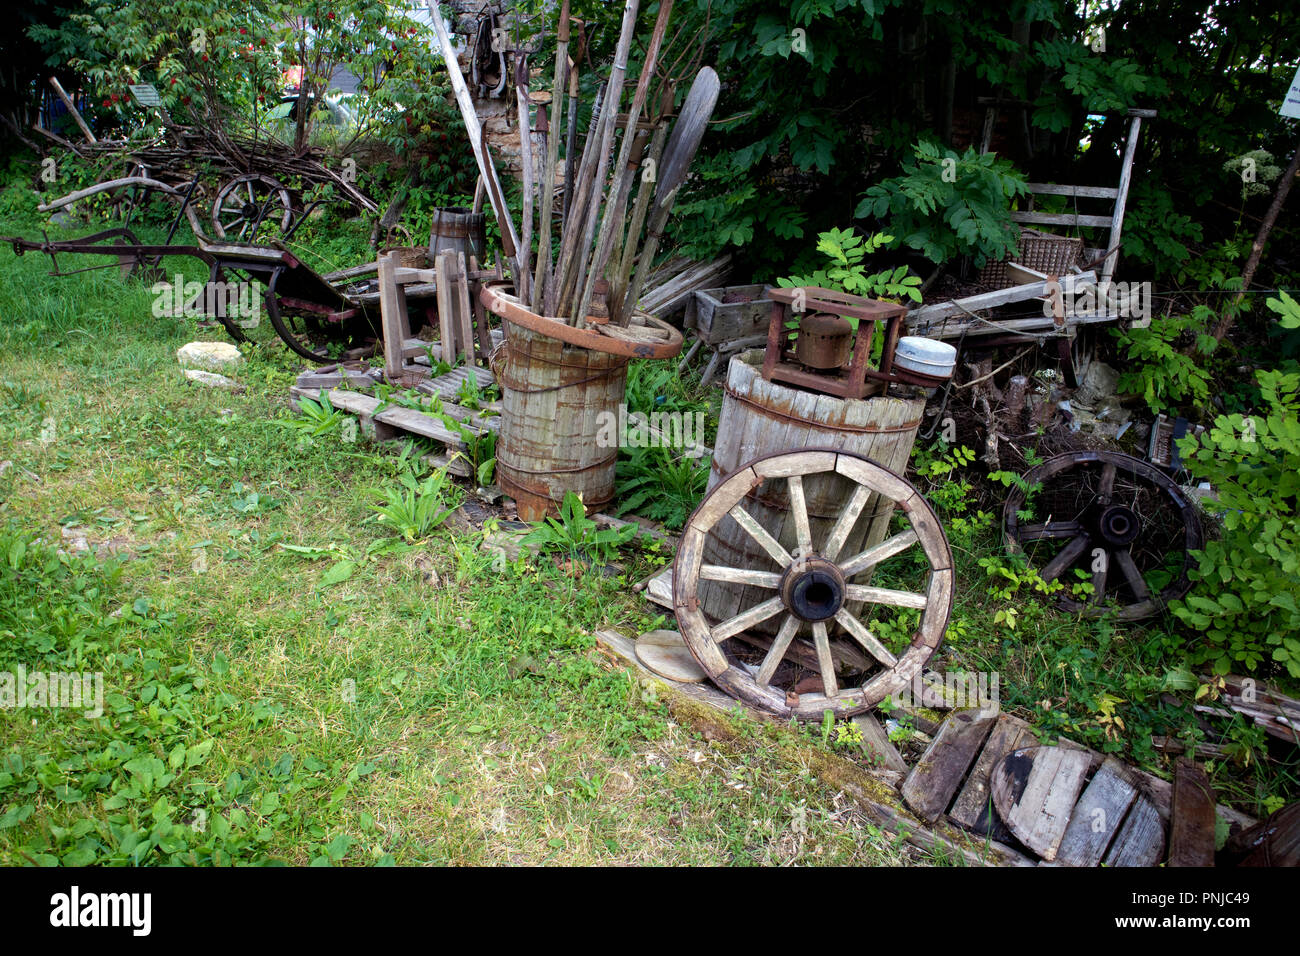 Open Air Museum di antichi contadini, cose vecchie ruote e barili Foto Stock